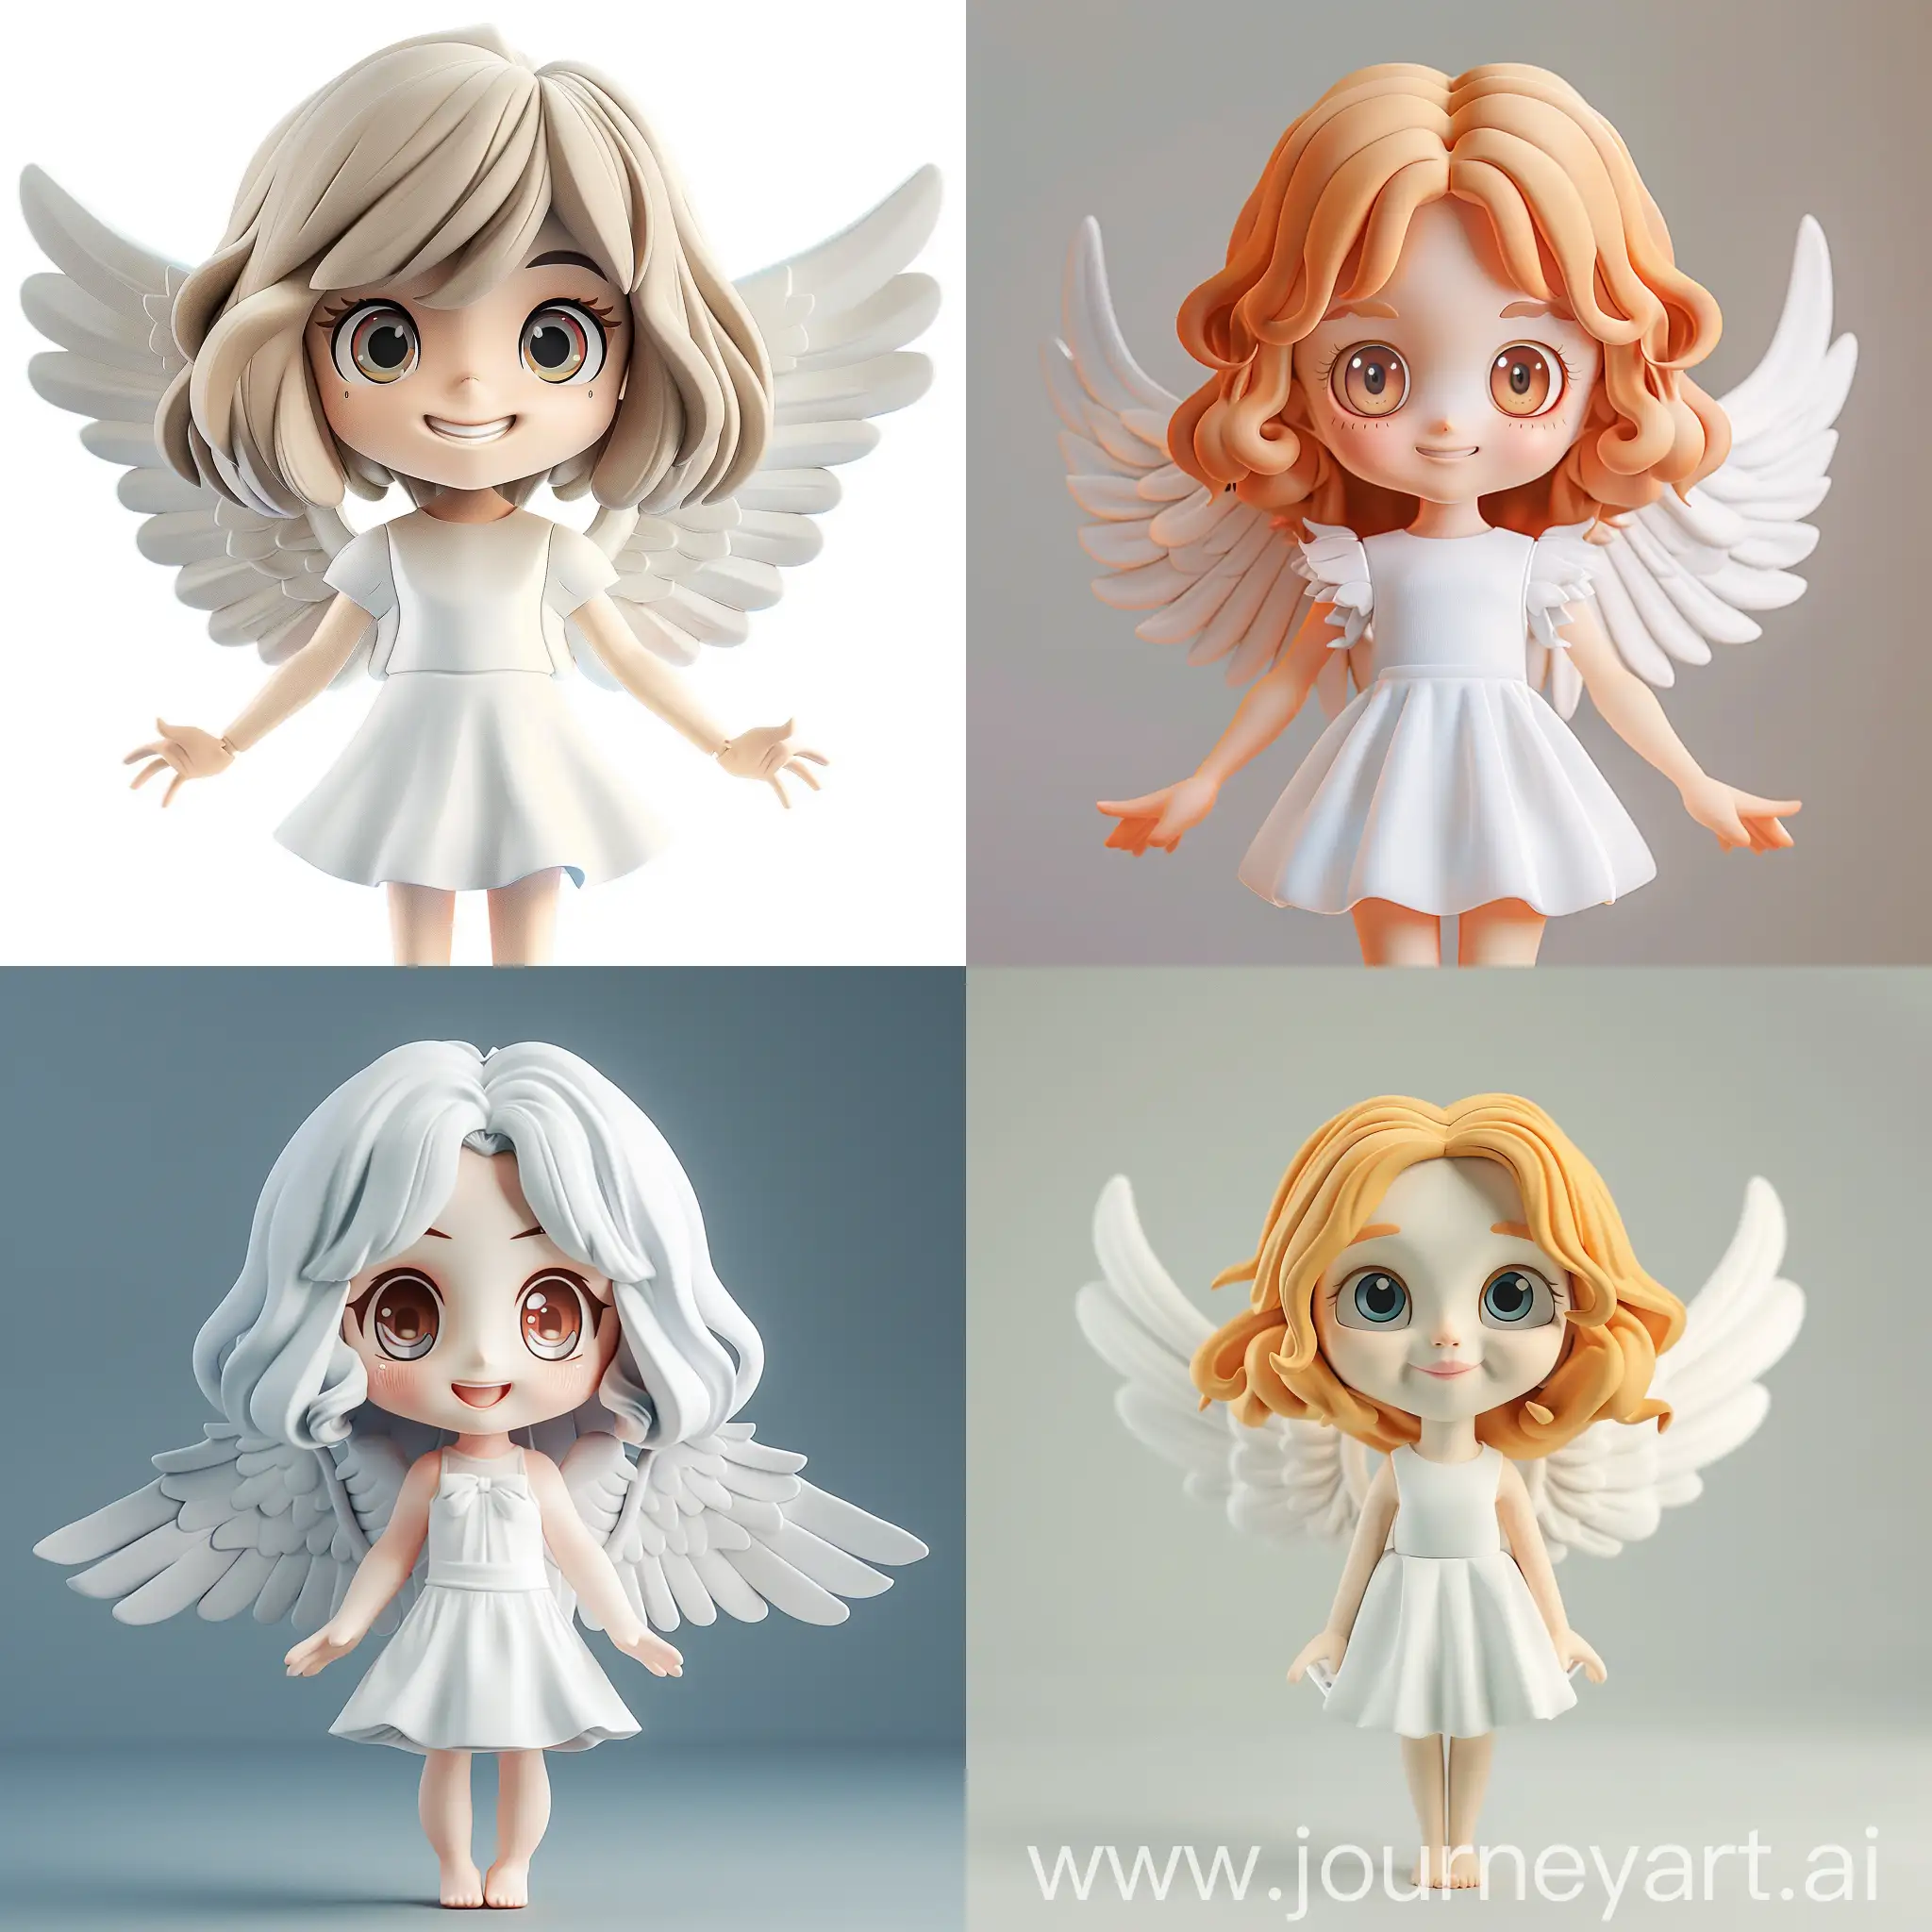 天使女孩，小白裙子，明亮有神的眼睛，微笑的表情，浅色头发，中长发，盲盒玩具，泡泡玛特风格，3D